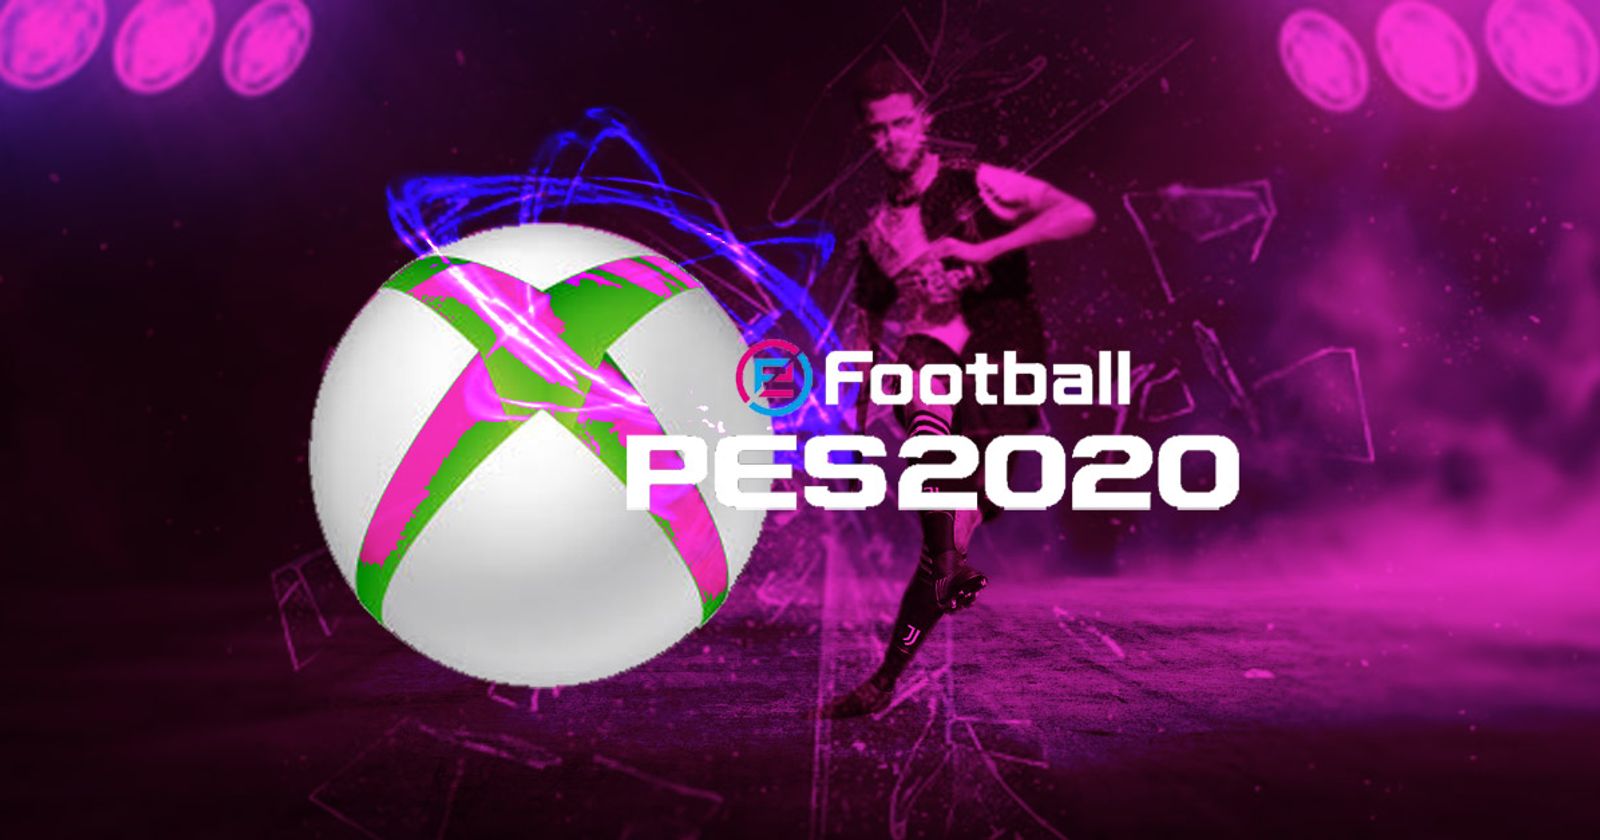 Xbox Game Pass recebe PES 2020, The Division e mais em dezembro